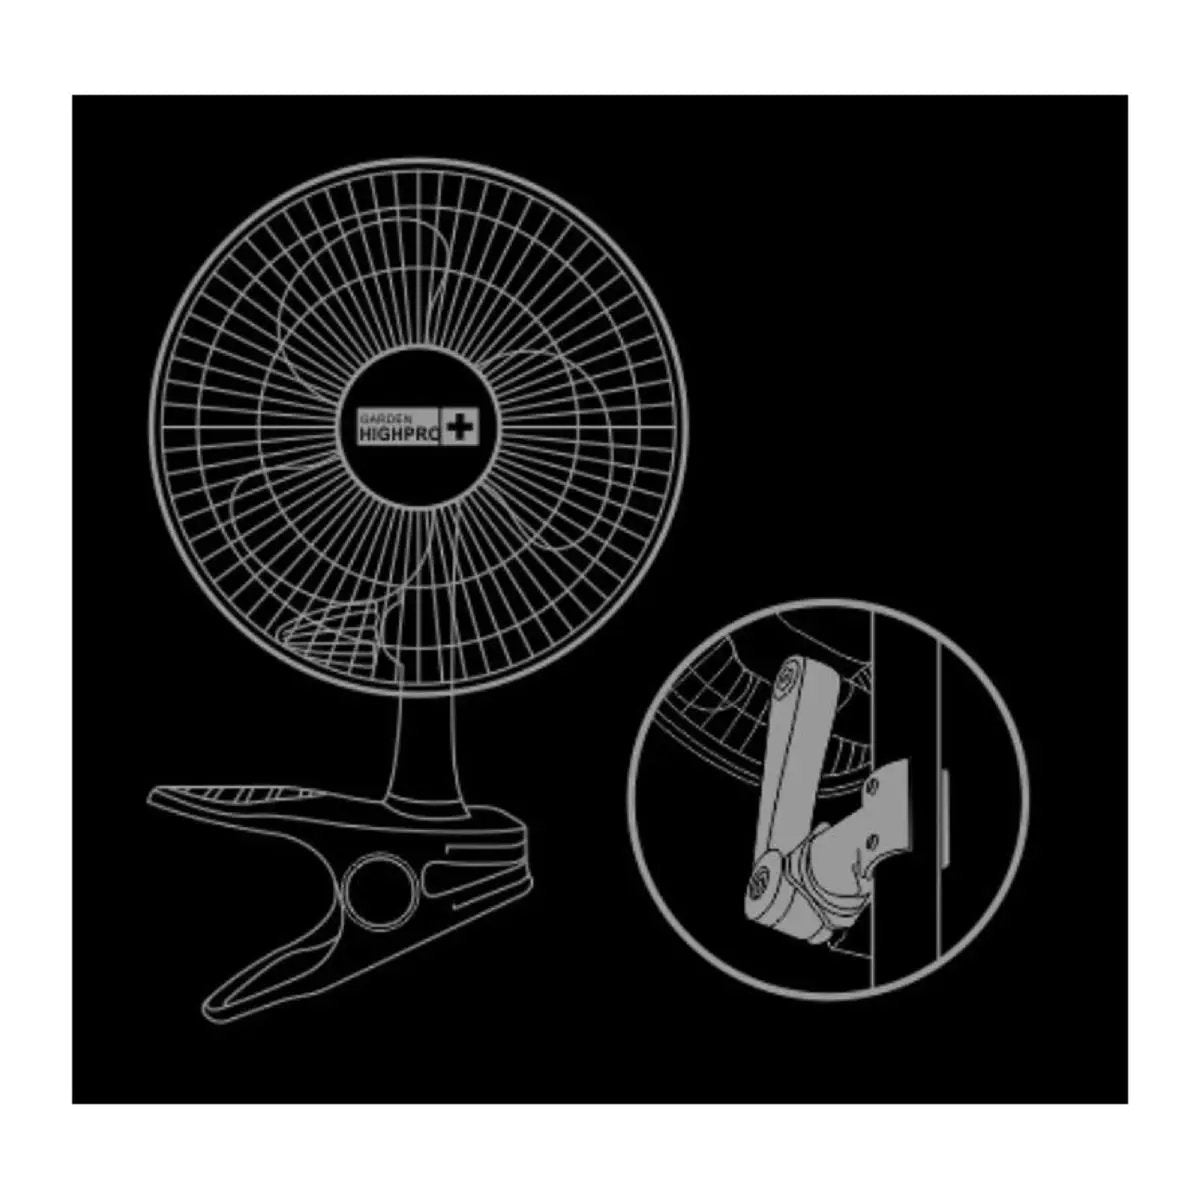 Ventilateur à pince Garden Highpro ECO 5 watt